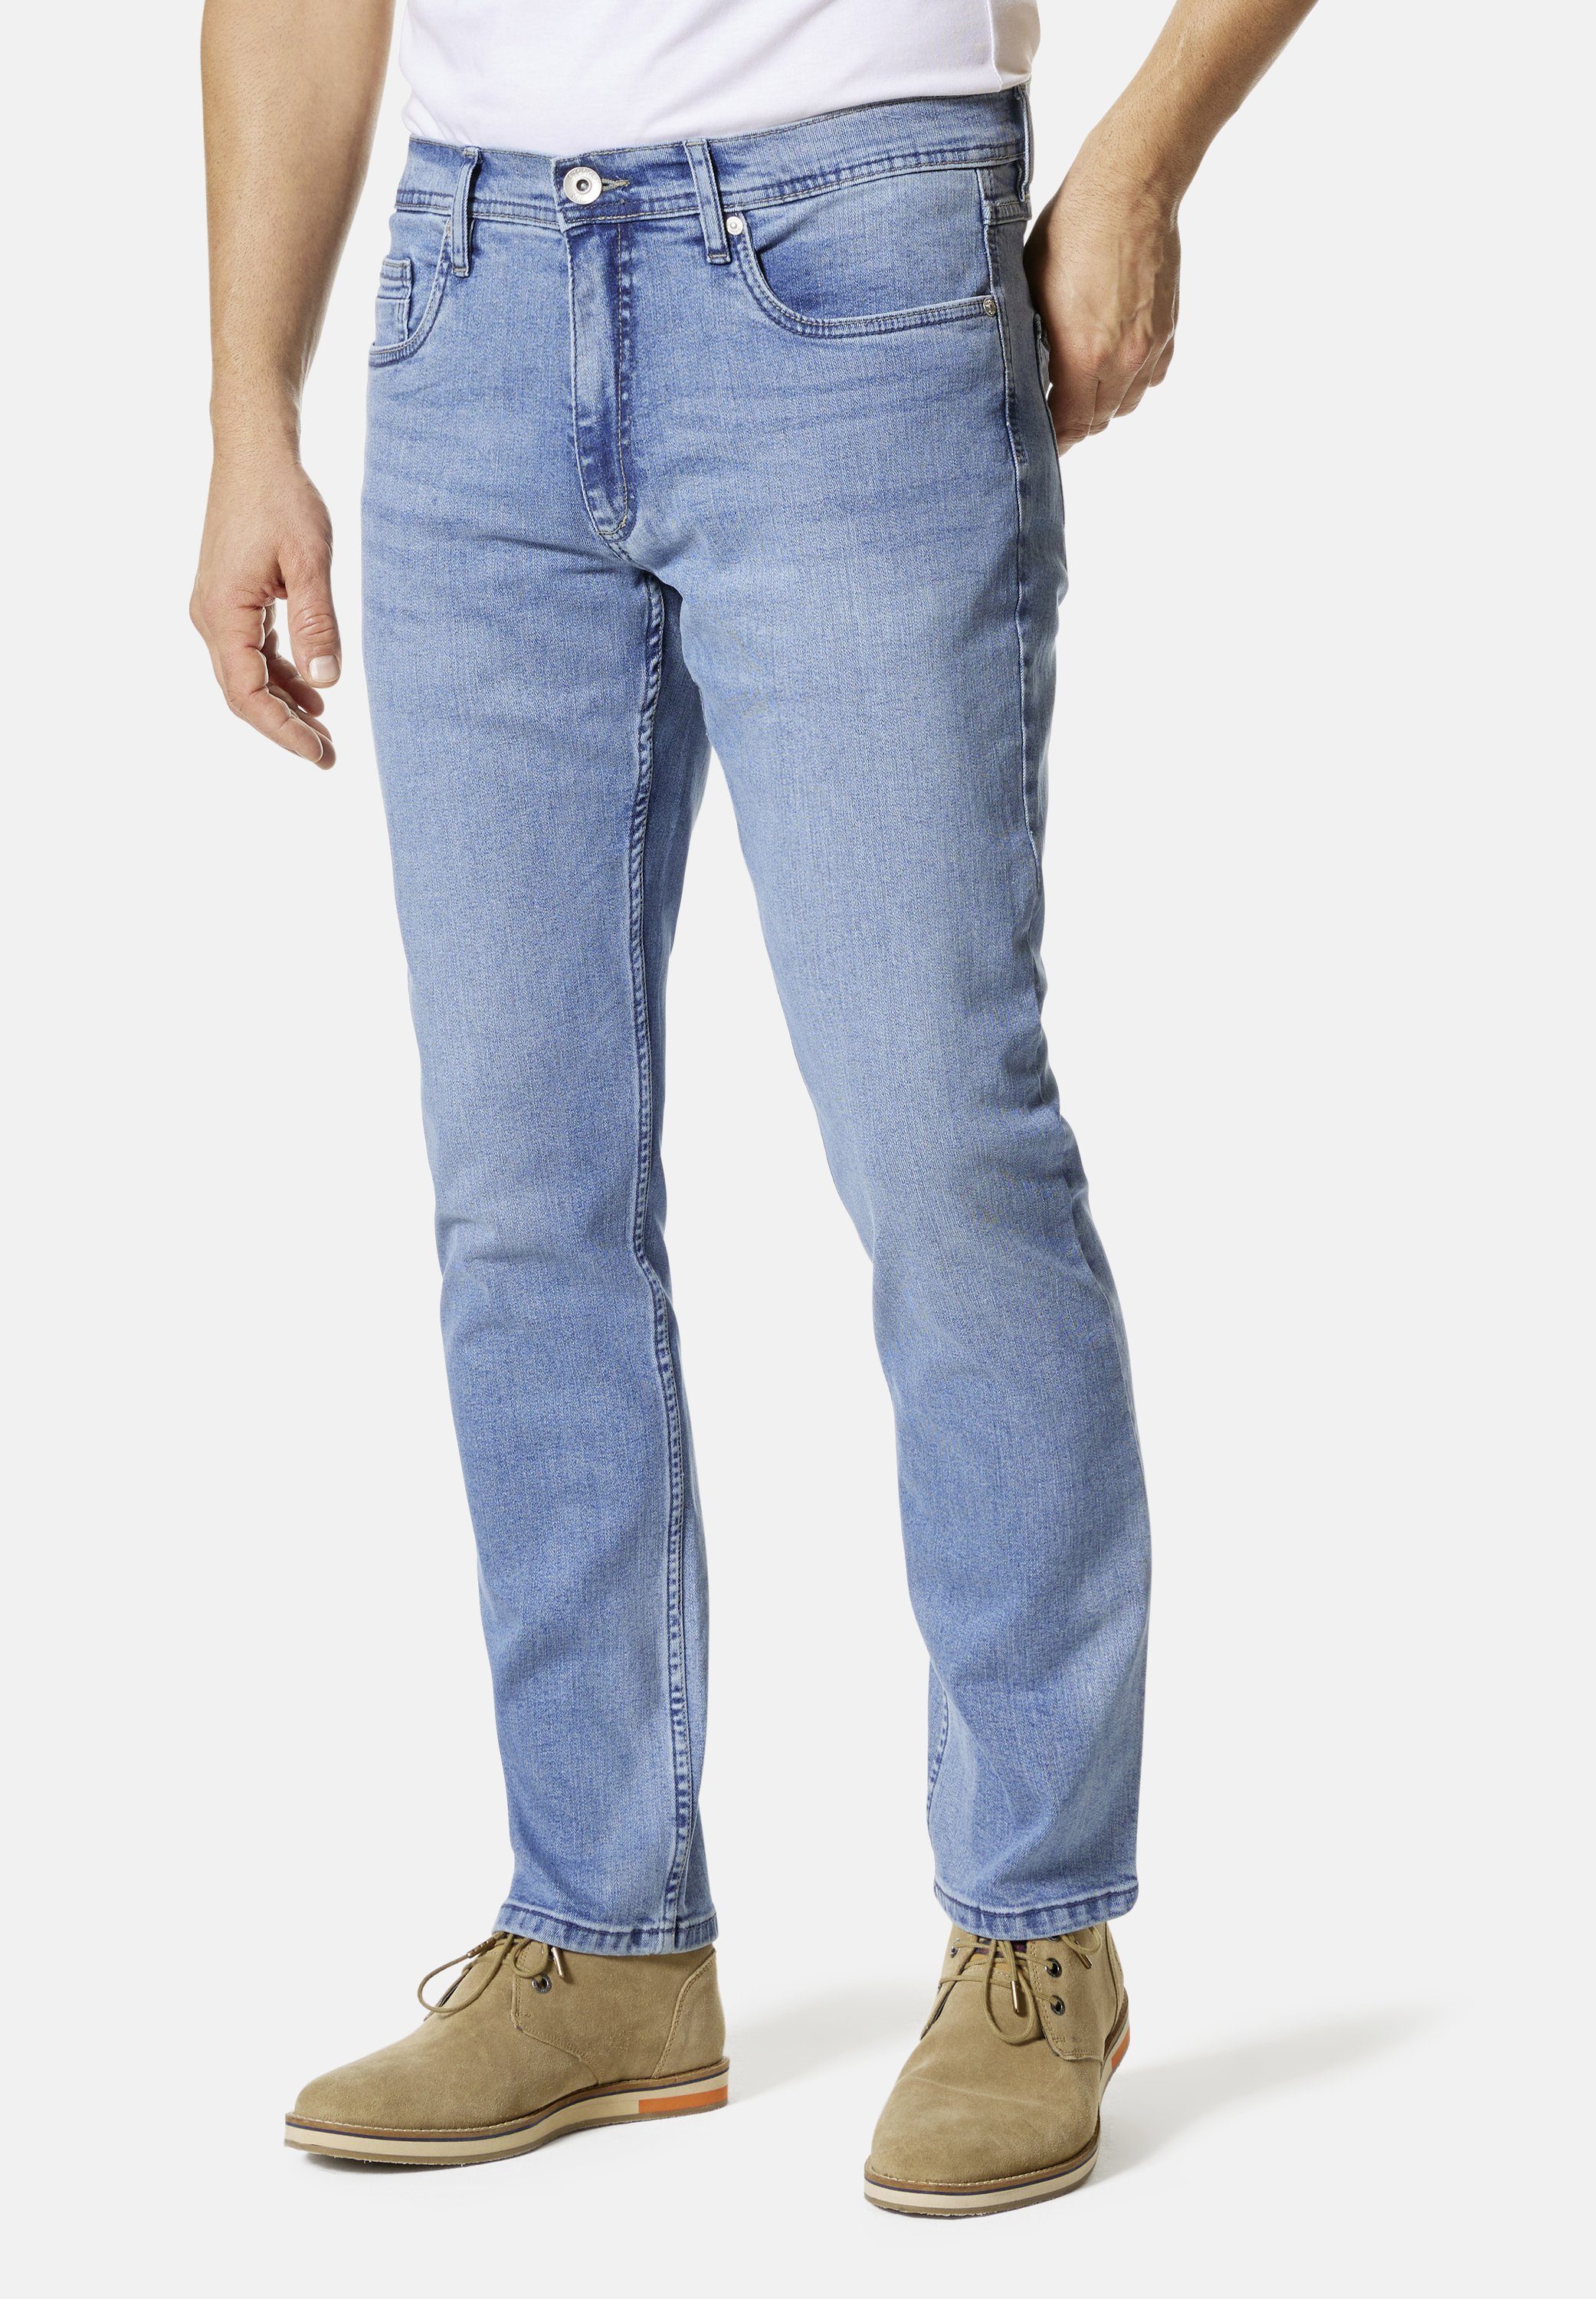 Stooker Men 5-Pocket-Jeans Glendale Denim used Slim Straight Fit skyblue